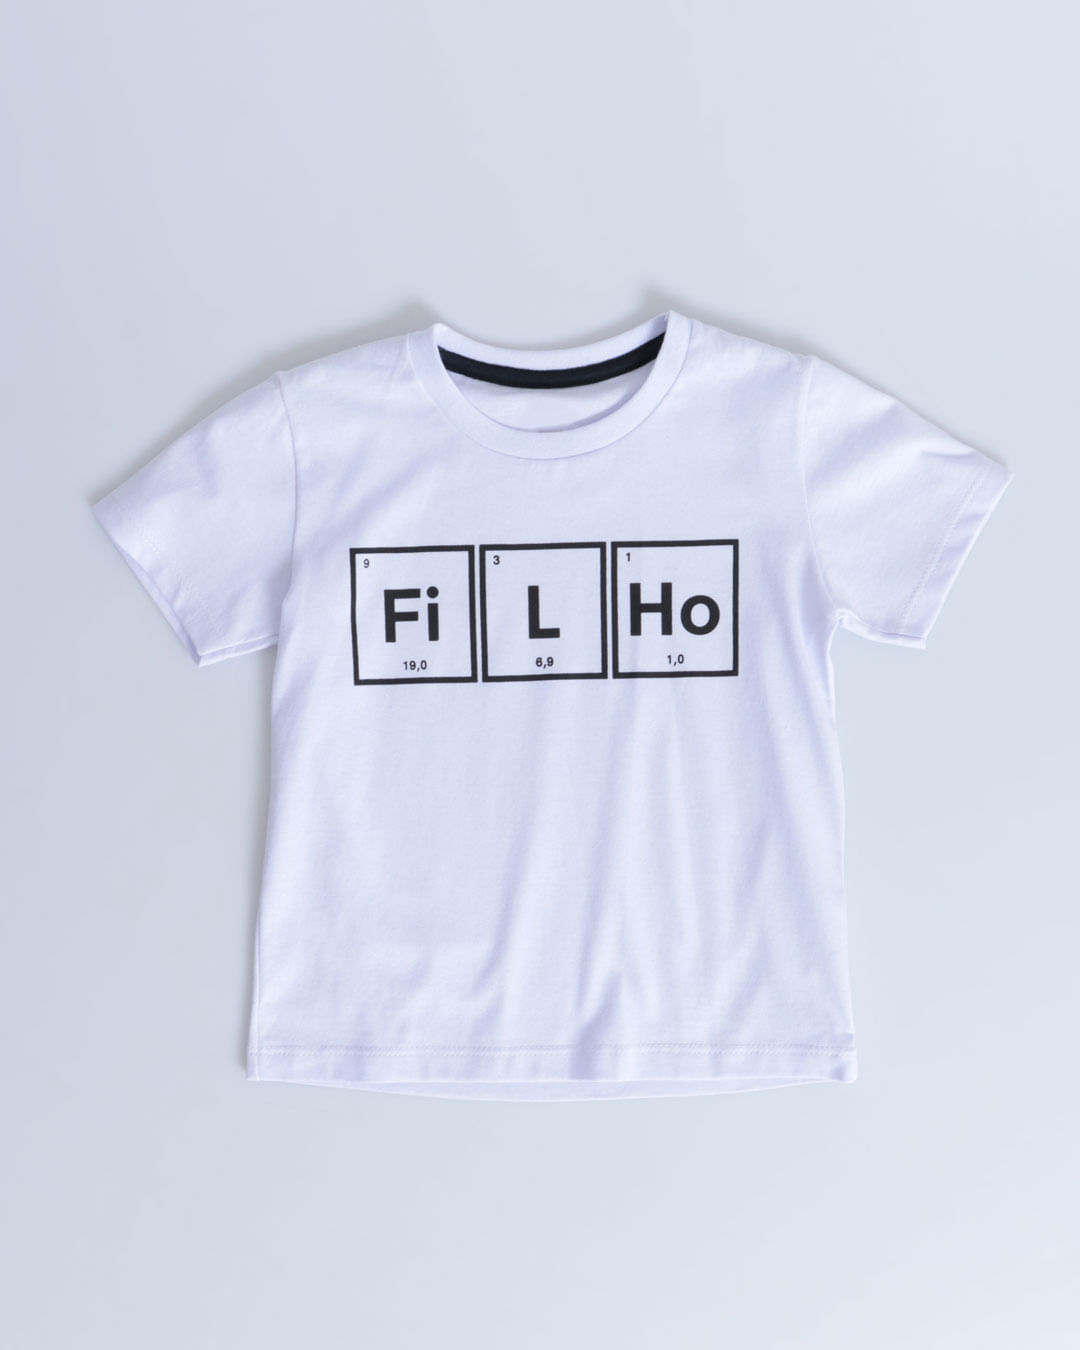 Camiseta-Bebe-Manga-Curta-Estampa-Filho-Branca